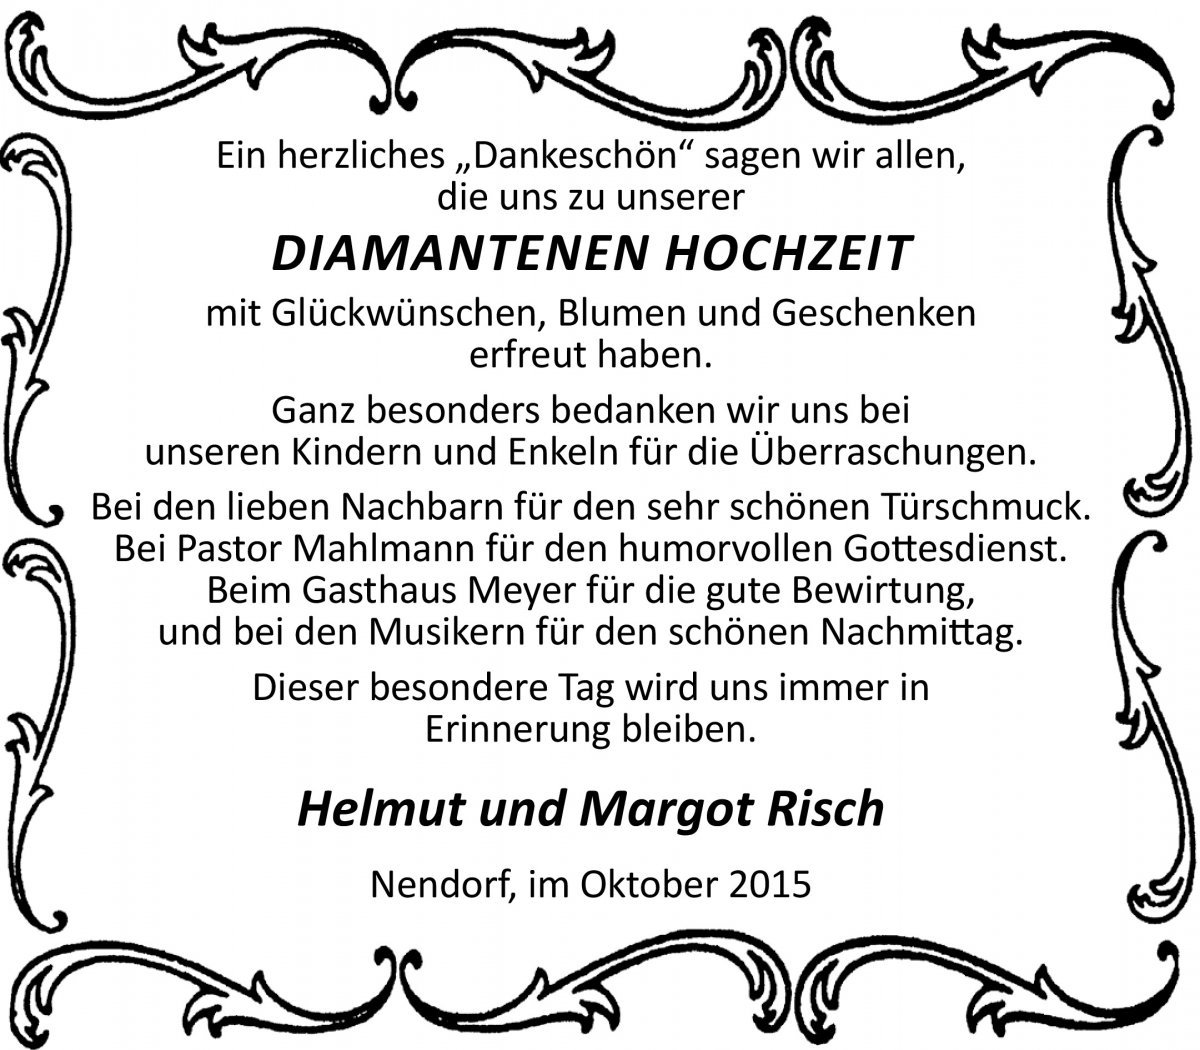 Diamantene Hochzeit Zeitungsanzeige : Diamantene Hochzeit Zeitungsanzeige - Schenefeld 60 Jahre ...